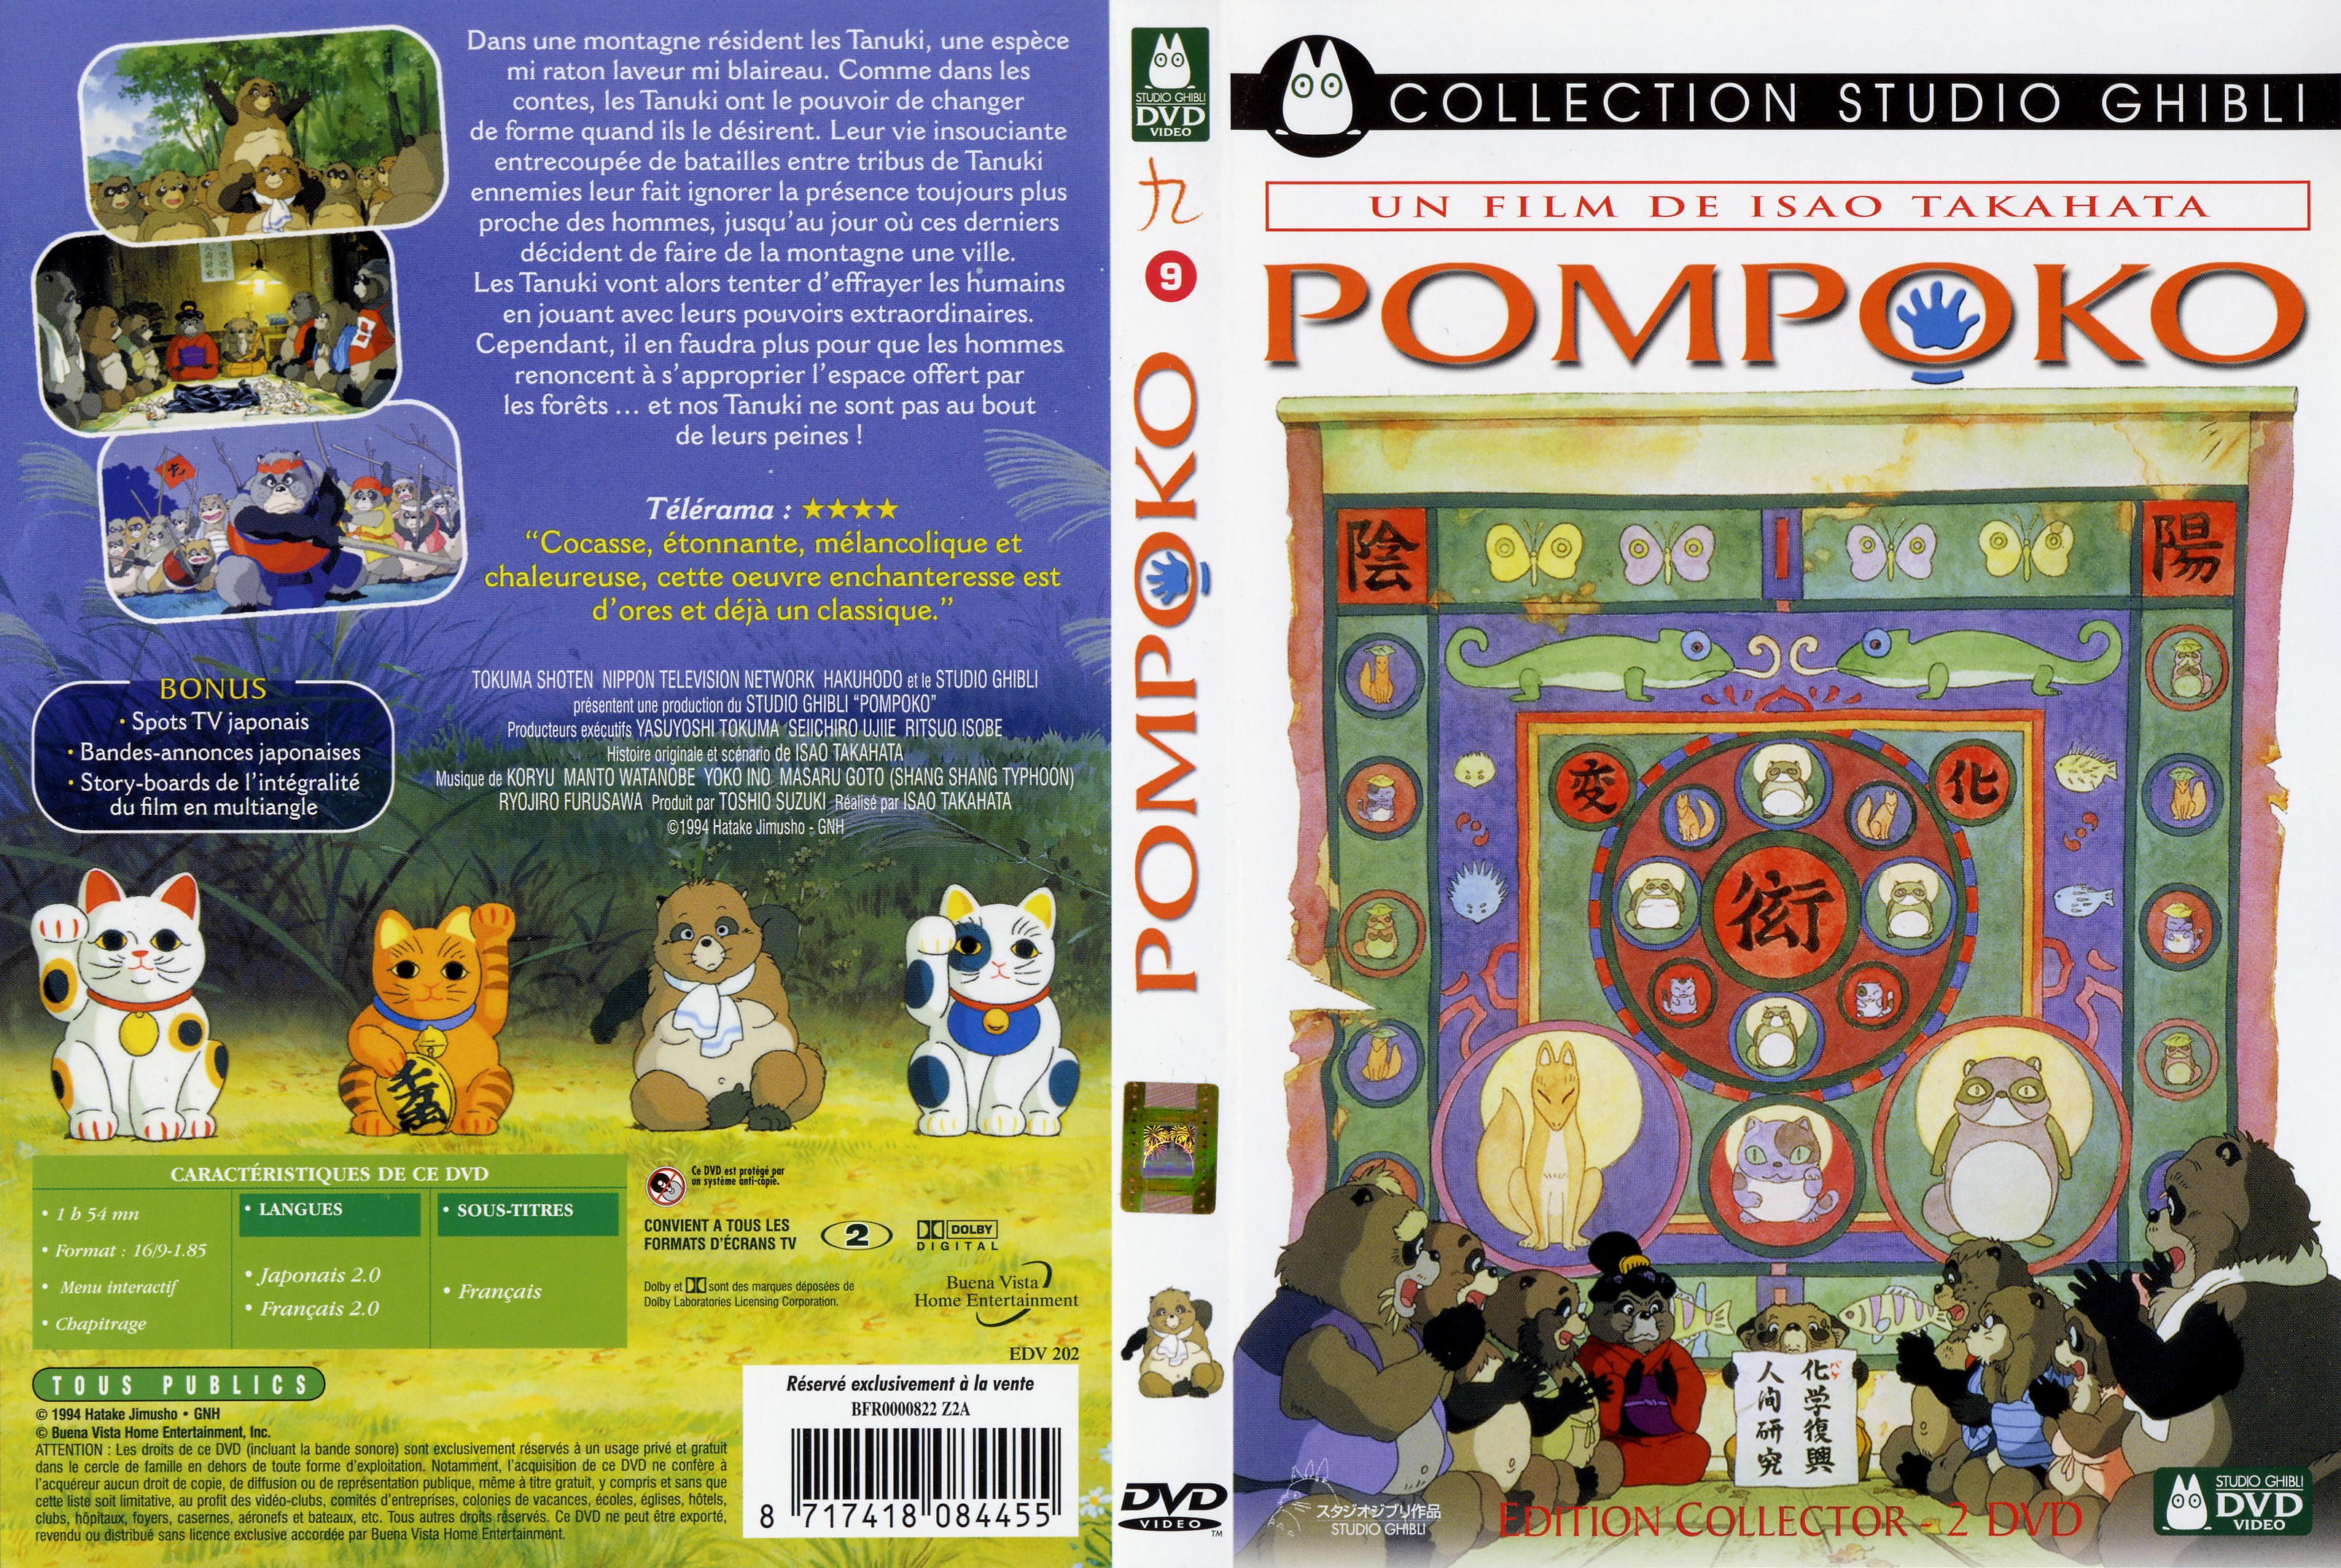 Jaquette DVD Pompoko v2